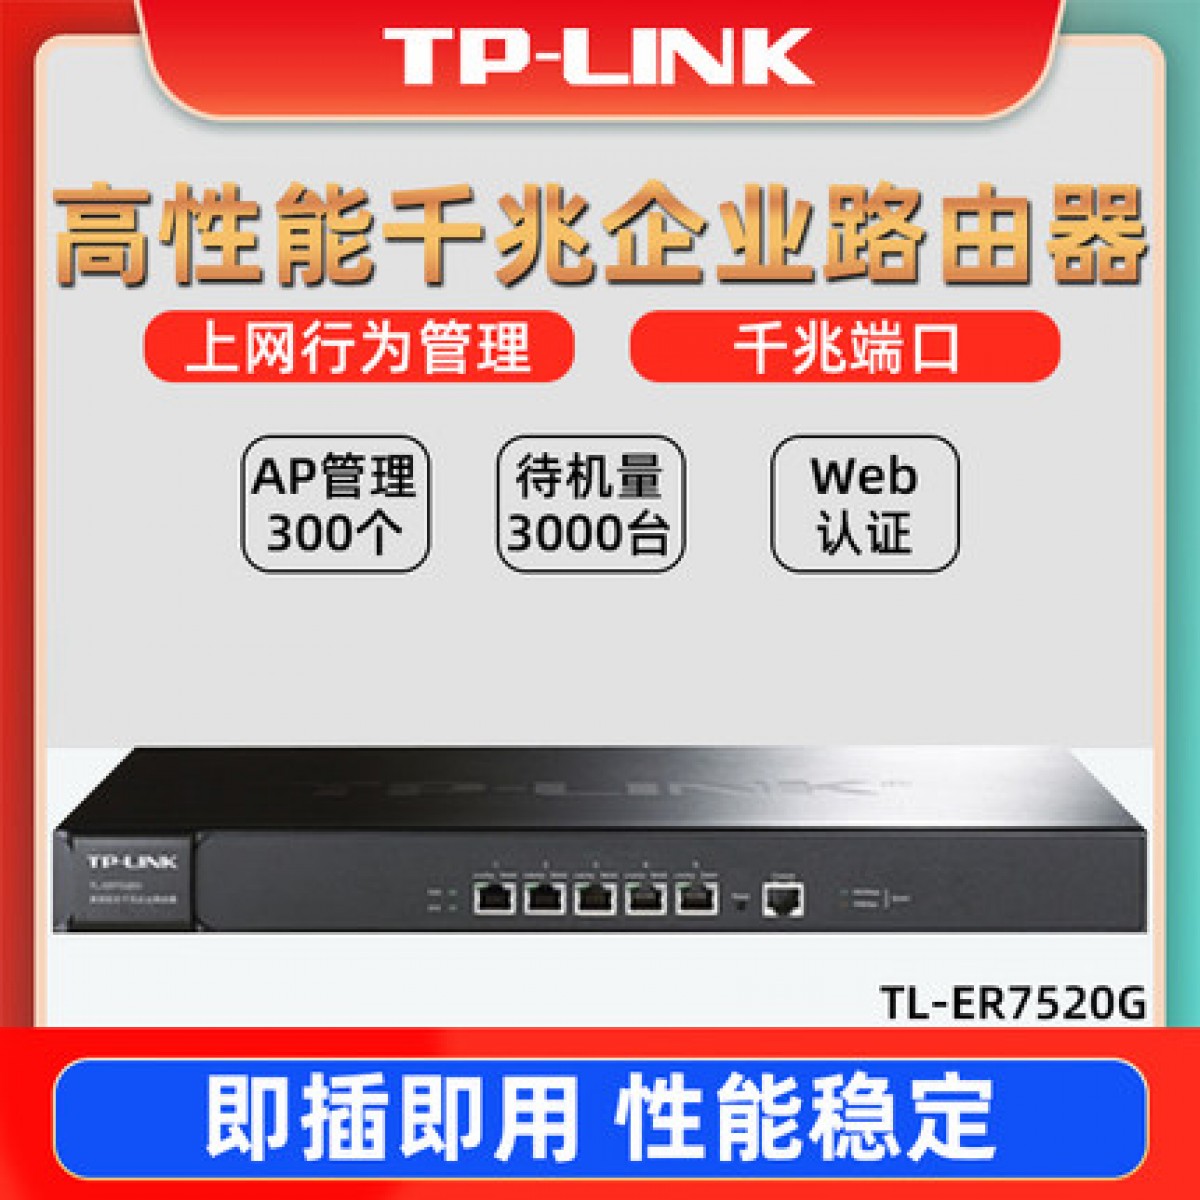 TP-LINK全千兆有线路由器TL-ER7520G四核5口AC企业级商用大型高性能上网行为管理防火墙Web远程控制带机3000